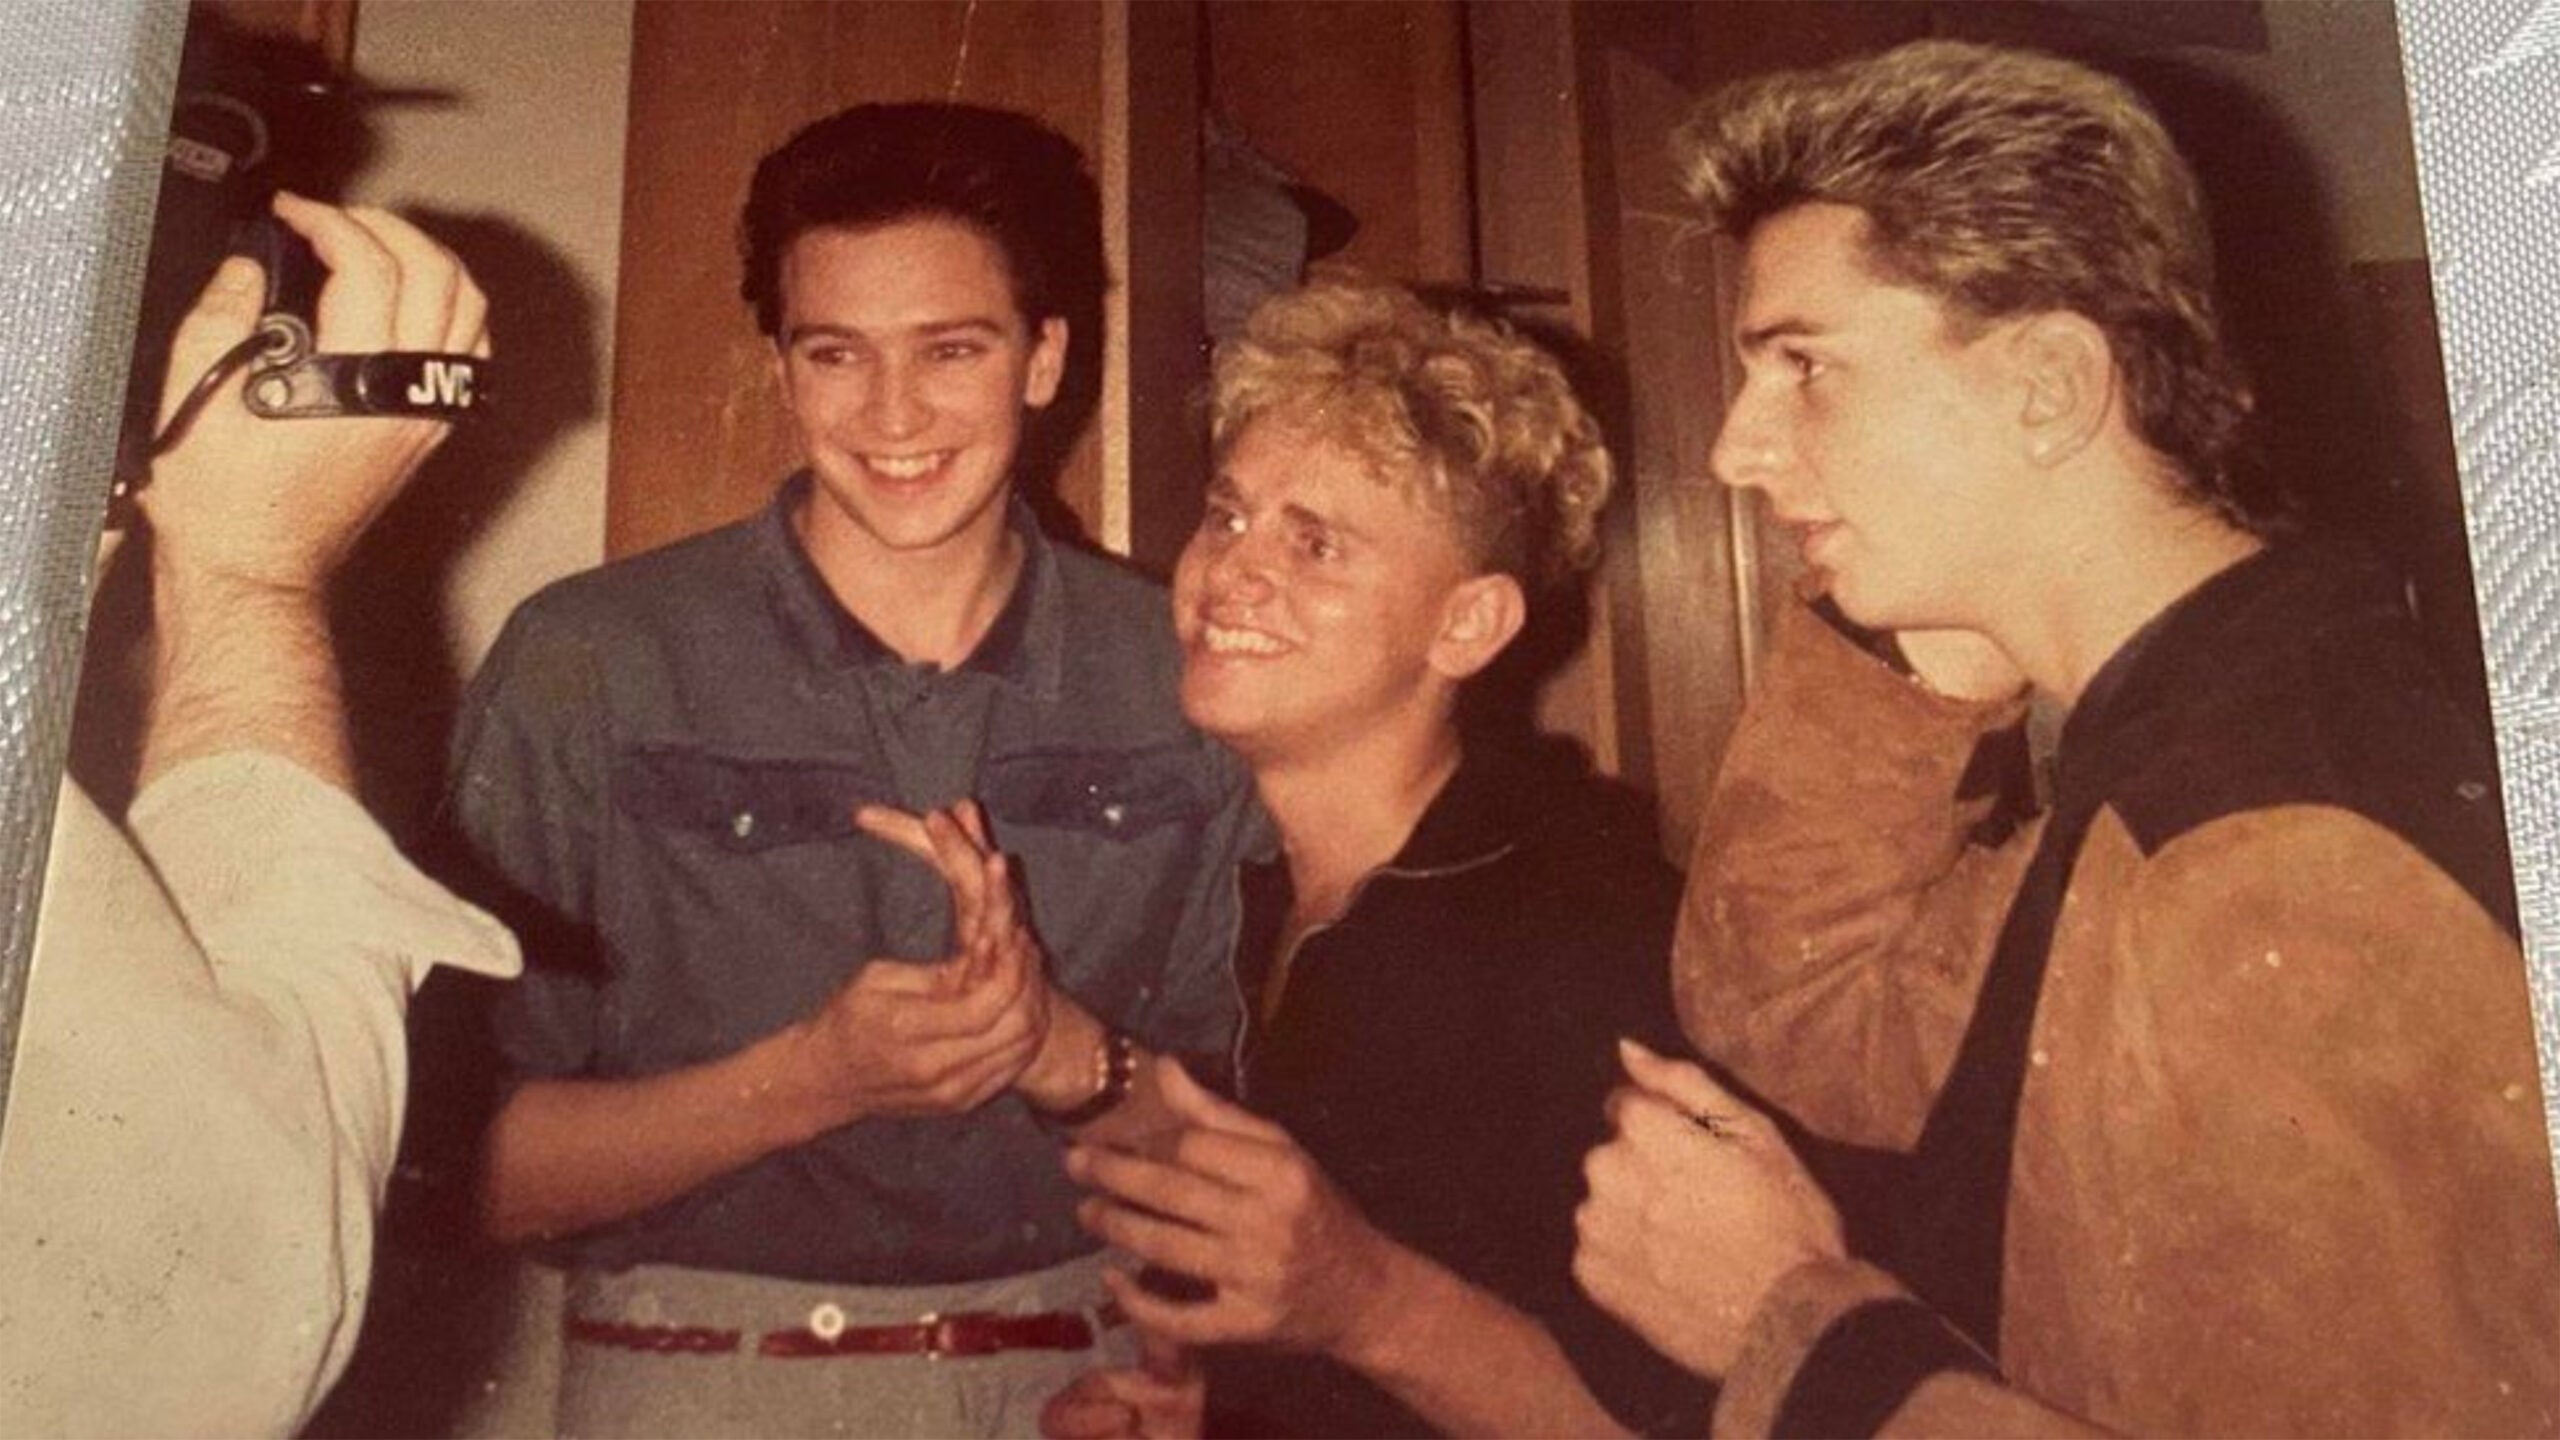 Foto do Depeche Mode tirada pela banda no rolo de filme de um fã